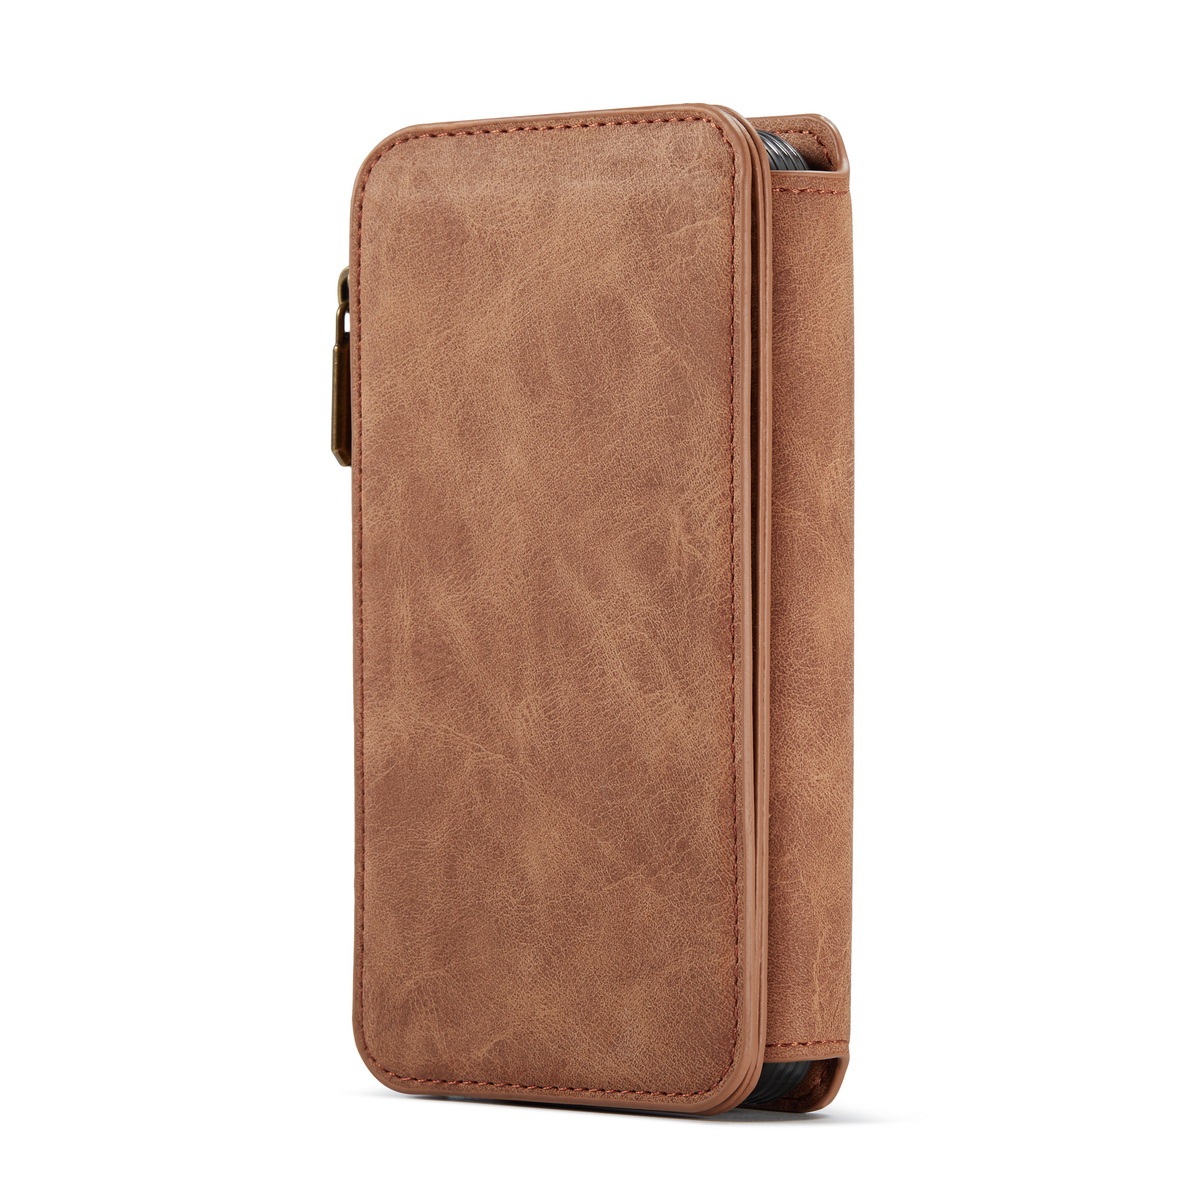 CaseMe läderfodral med magnetskal, iPhone 12 Pro Max, brun